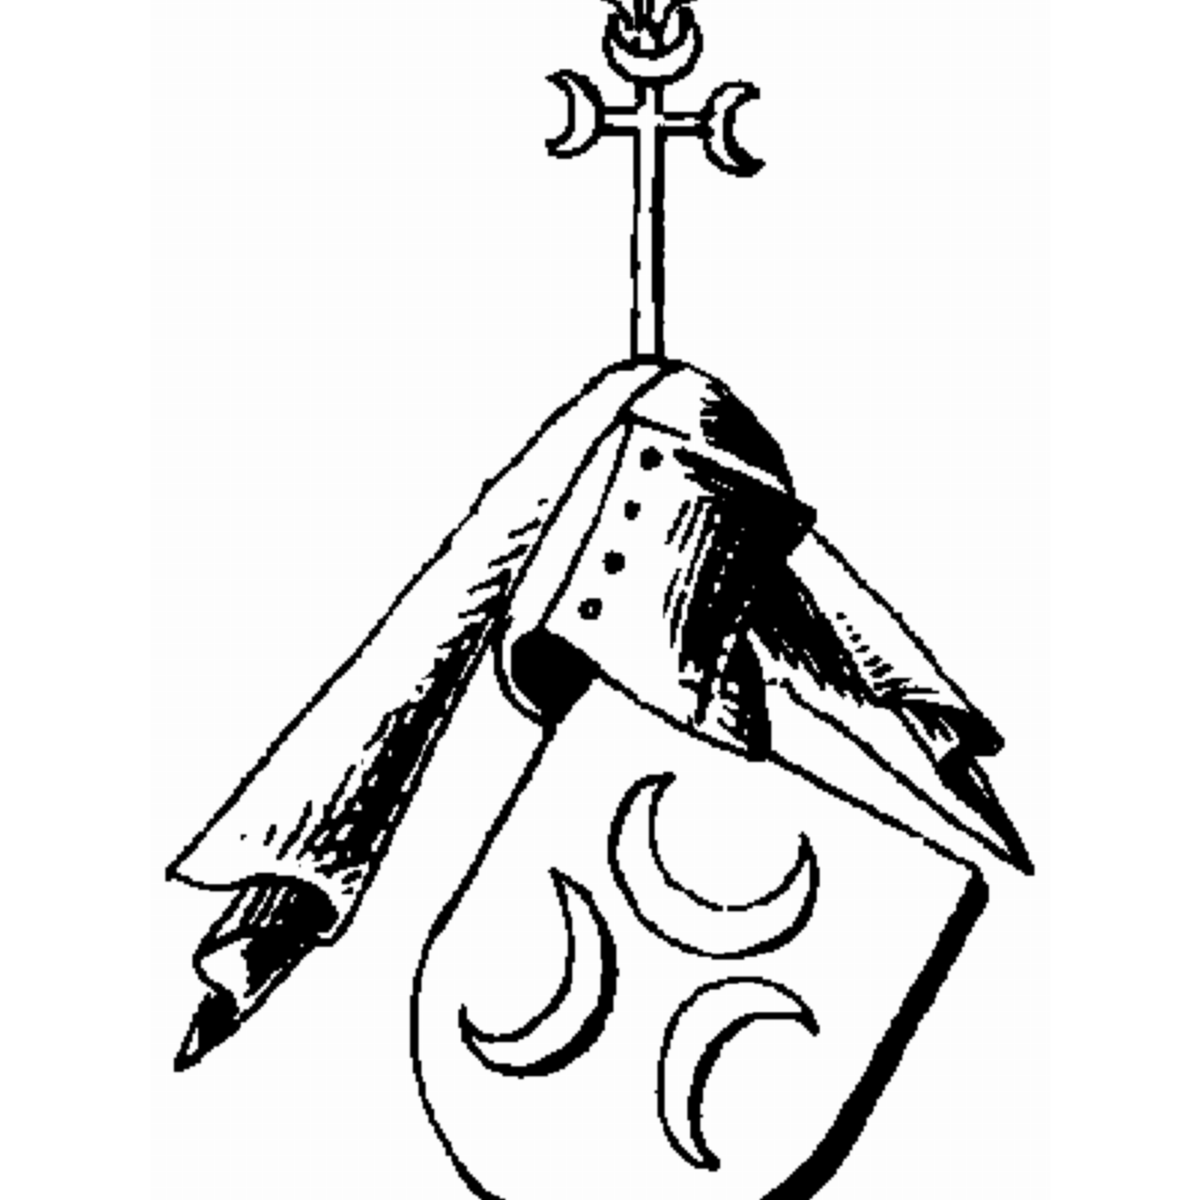 Coat of arms of family Dimari